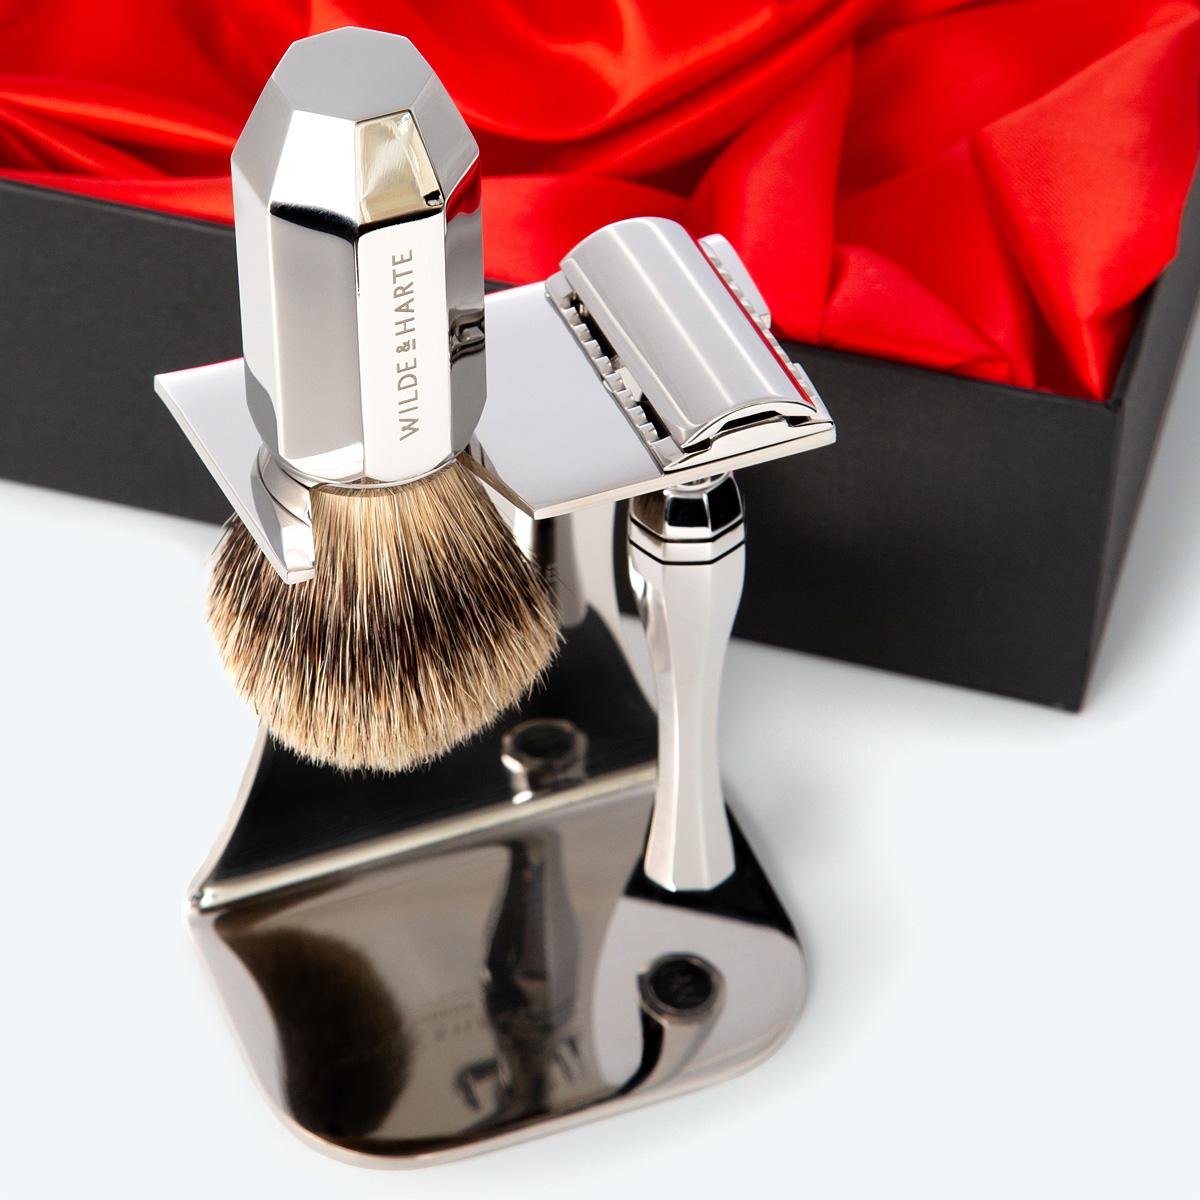 stainless steel traditional design razor and badger hair shaving brush gift set